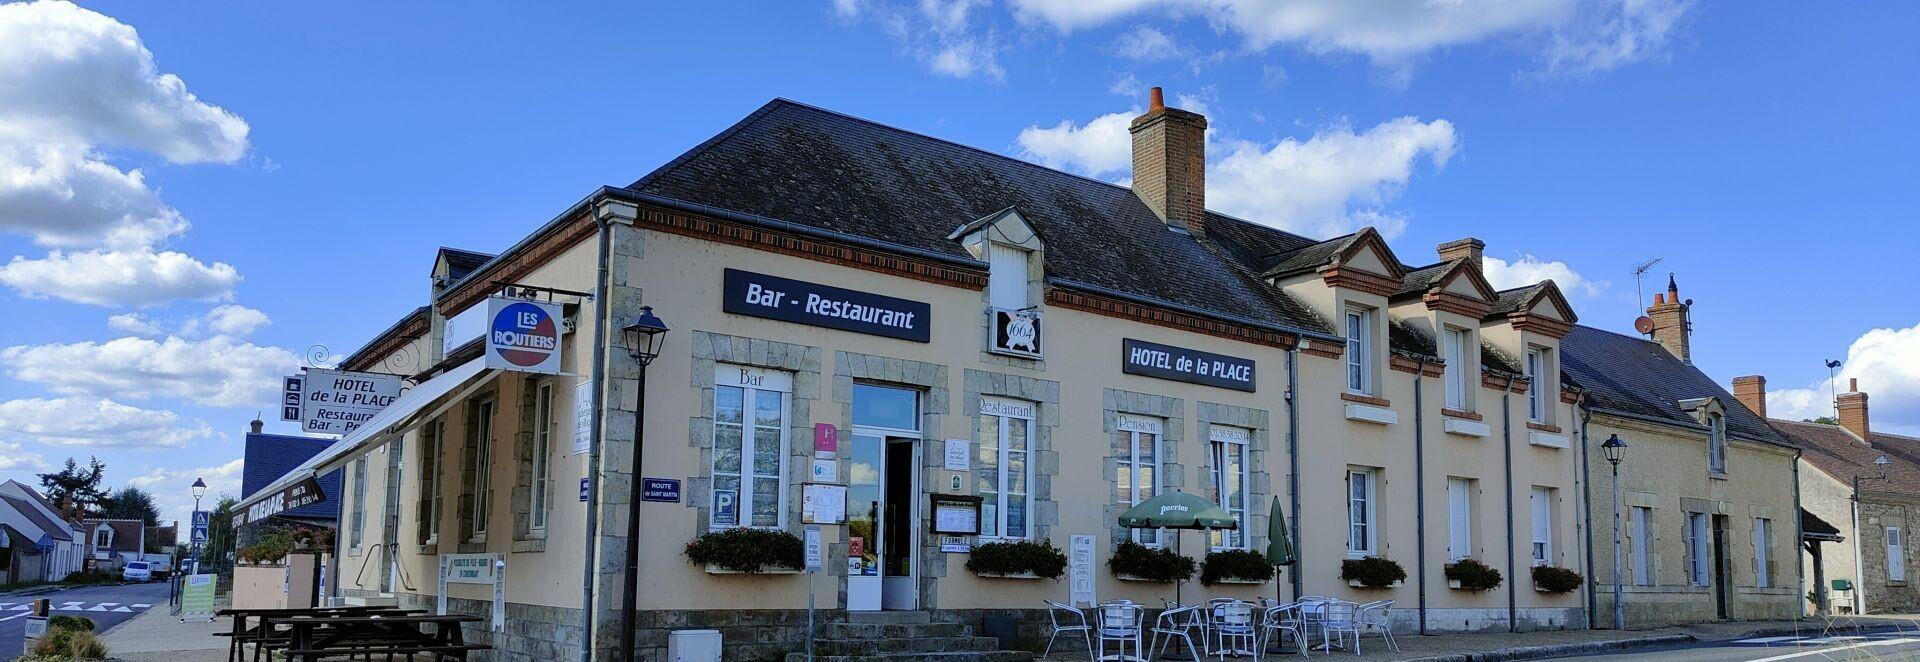 Vente hôtel-restaurant mur & fonds dans le Loiret